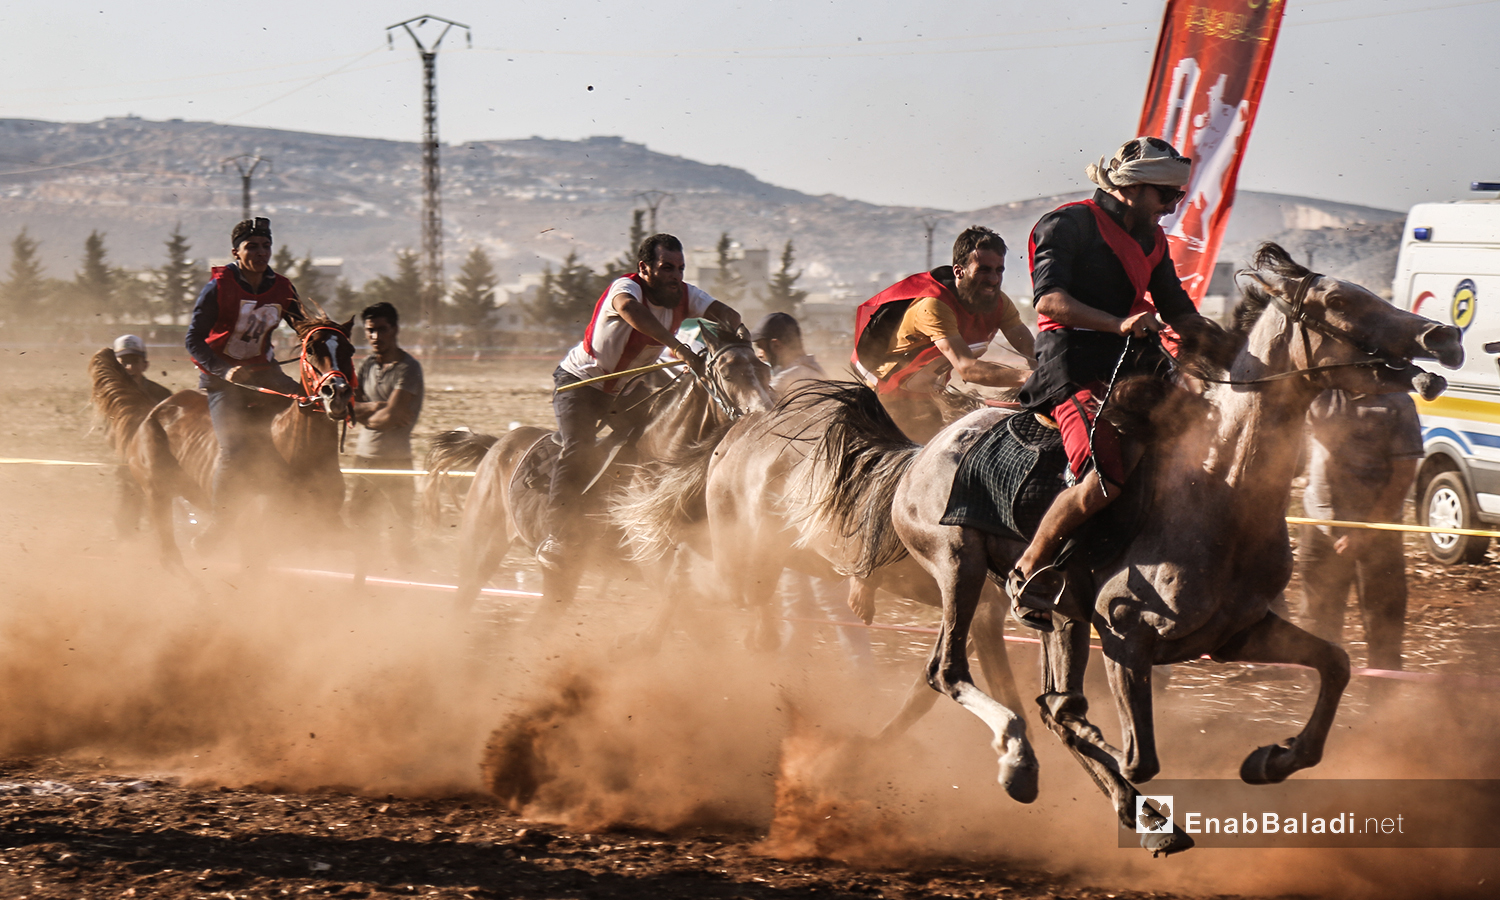 متسابقو على الخيول في مهرجان سرمد للخيول العربية الأصيلة في مدينة سرمدا بشمال إدلب - 28 آب 2020 (عنب بلدي / يوسف غريبي)